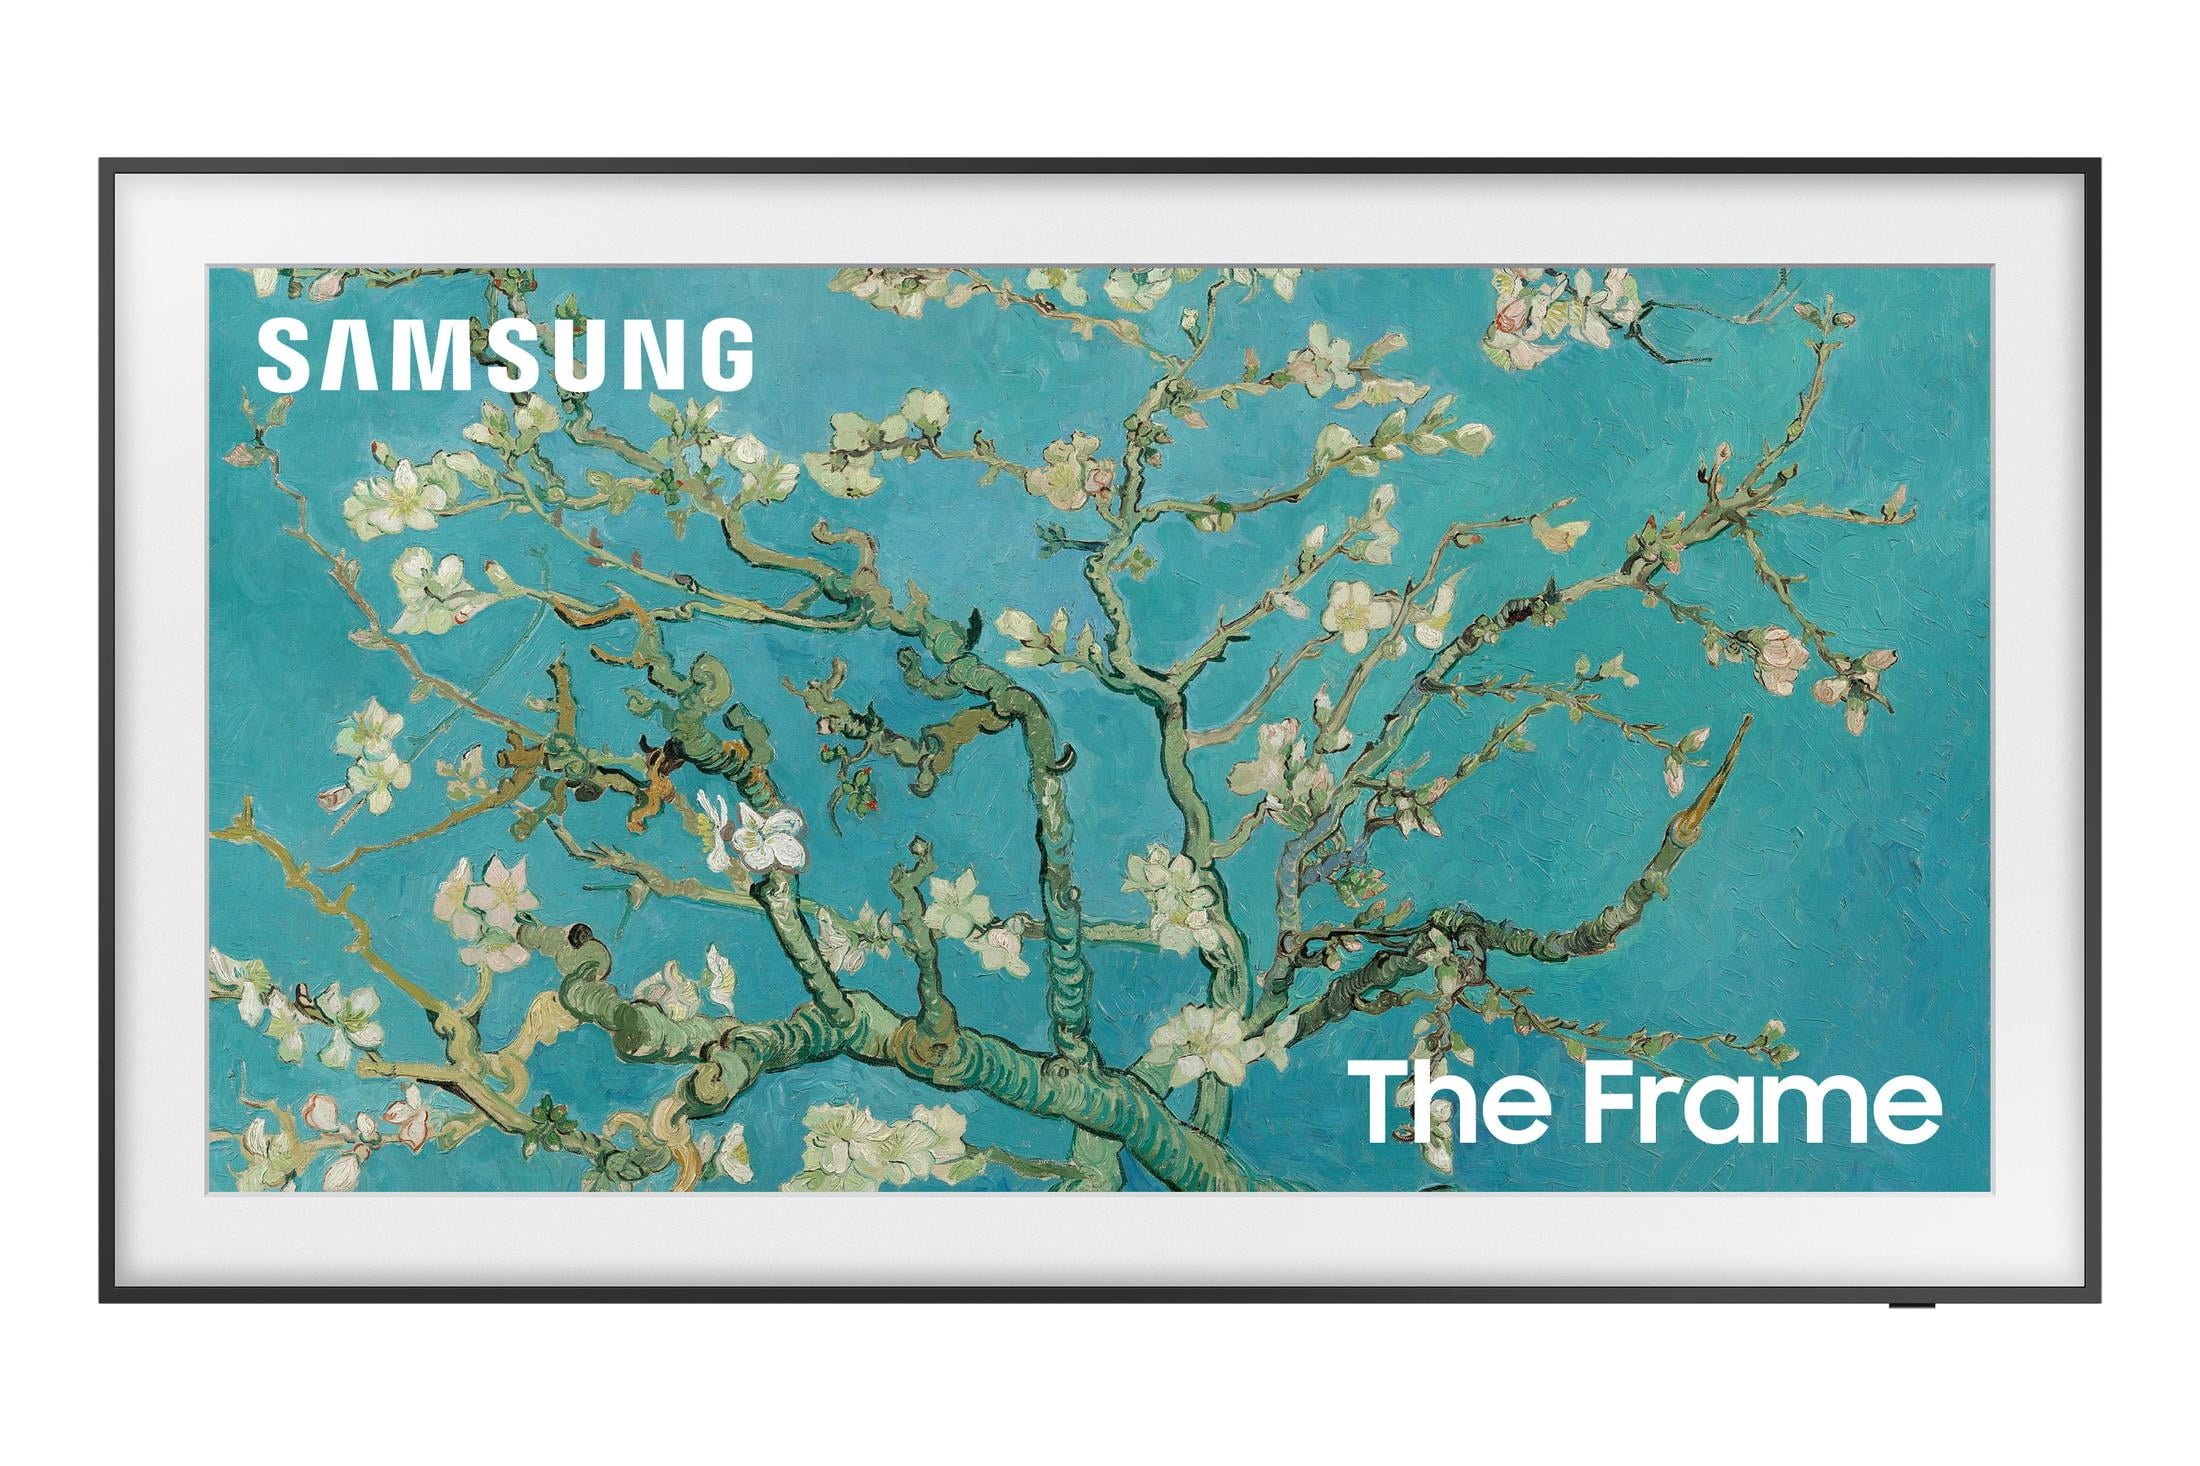 Samsung 55 The Frame QLED 4K Smart TV